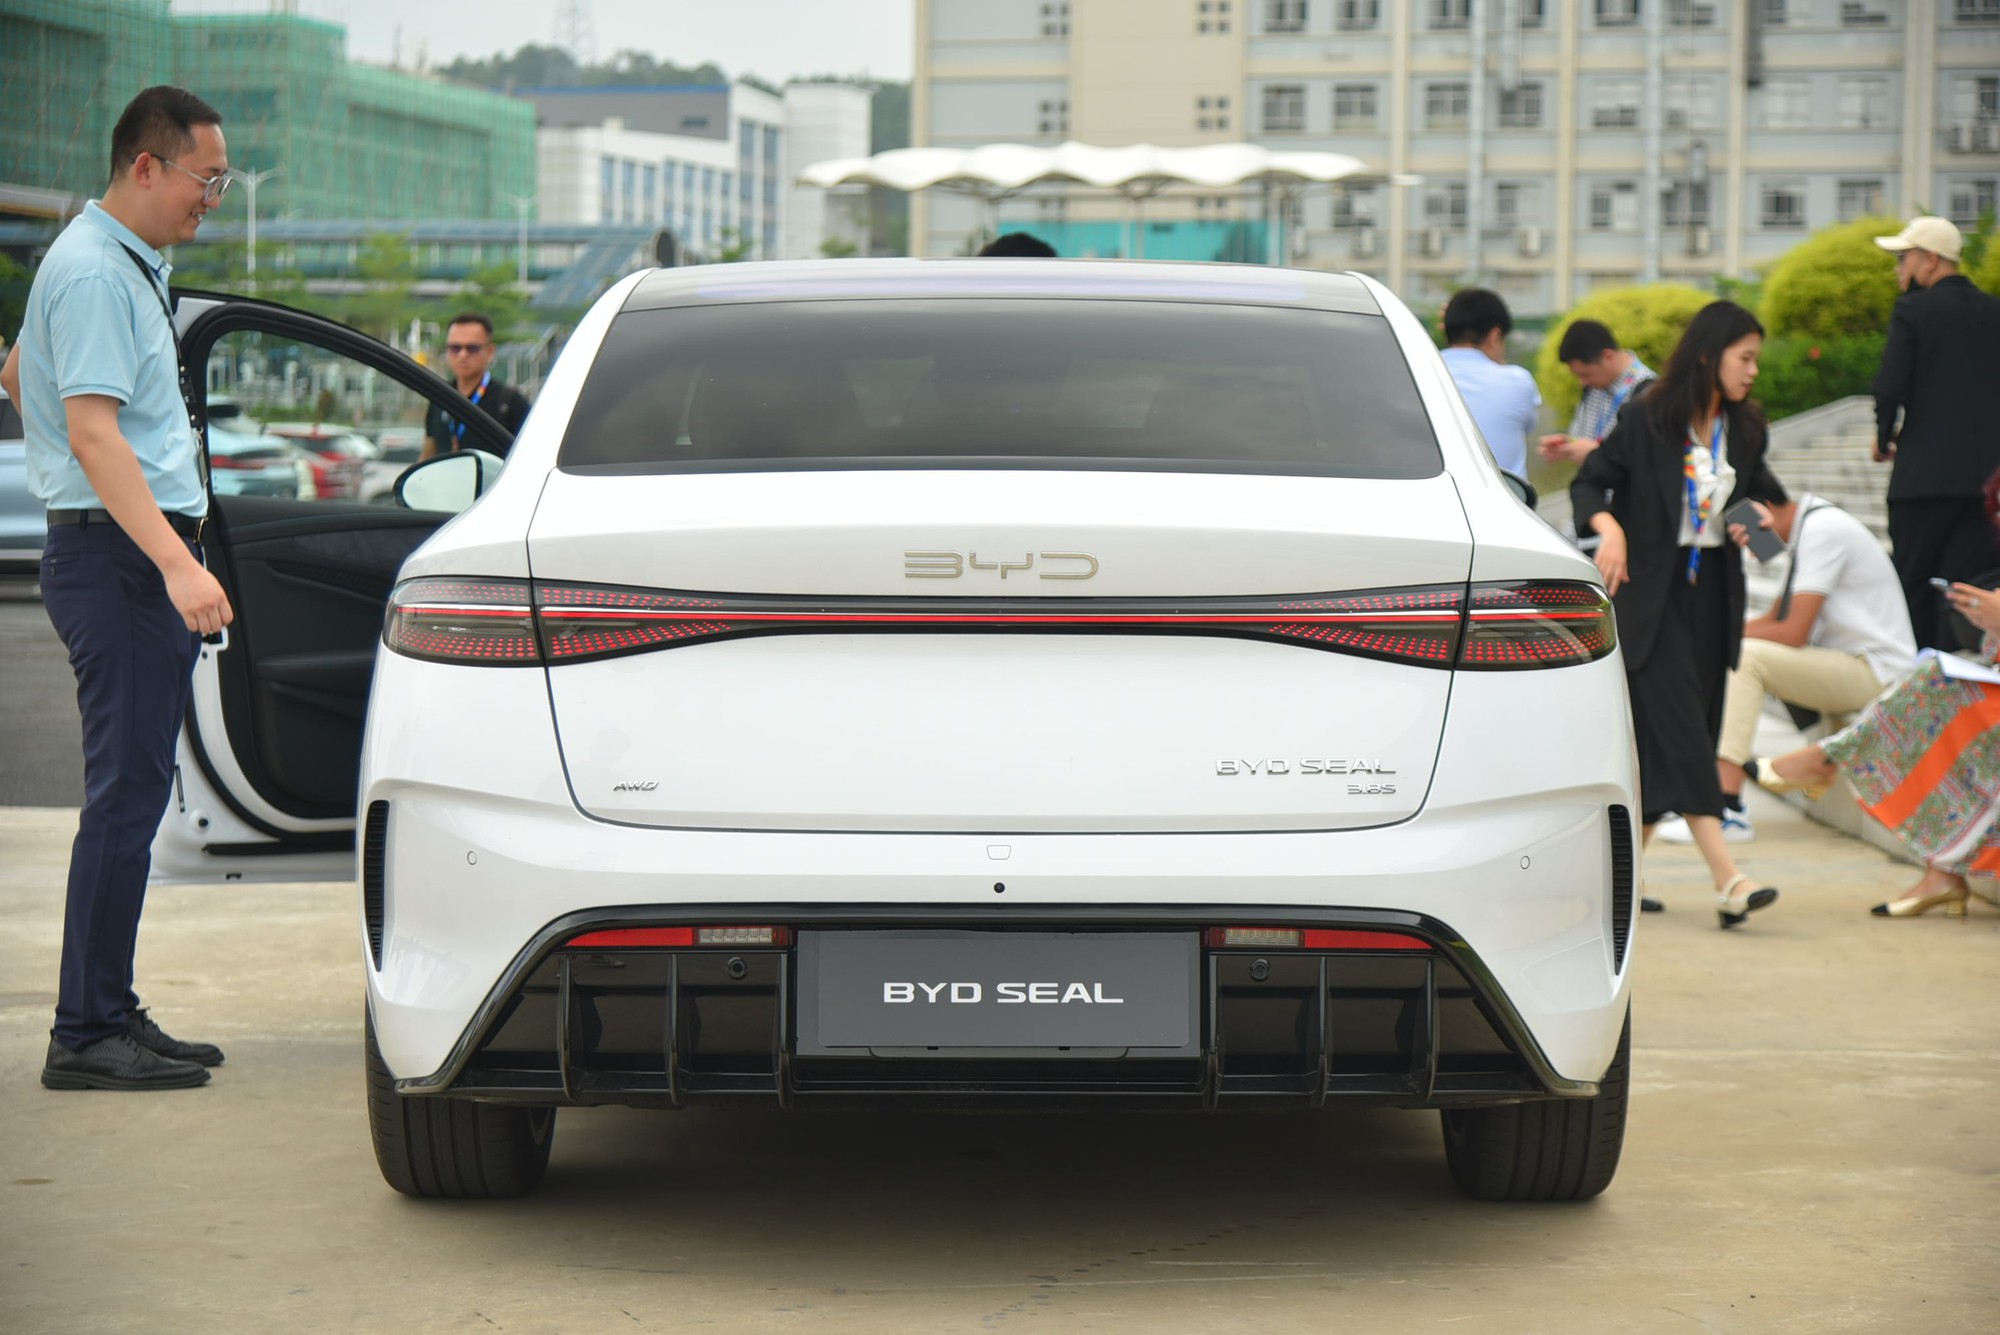 BYD Seal sắp về Việt Nam, bộ ảnh thực tế này cho thấy mẫu sedan ngang cỡ Camry này có gì 'hot' để chờ đợi- Ảnh 17.